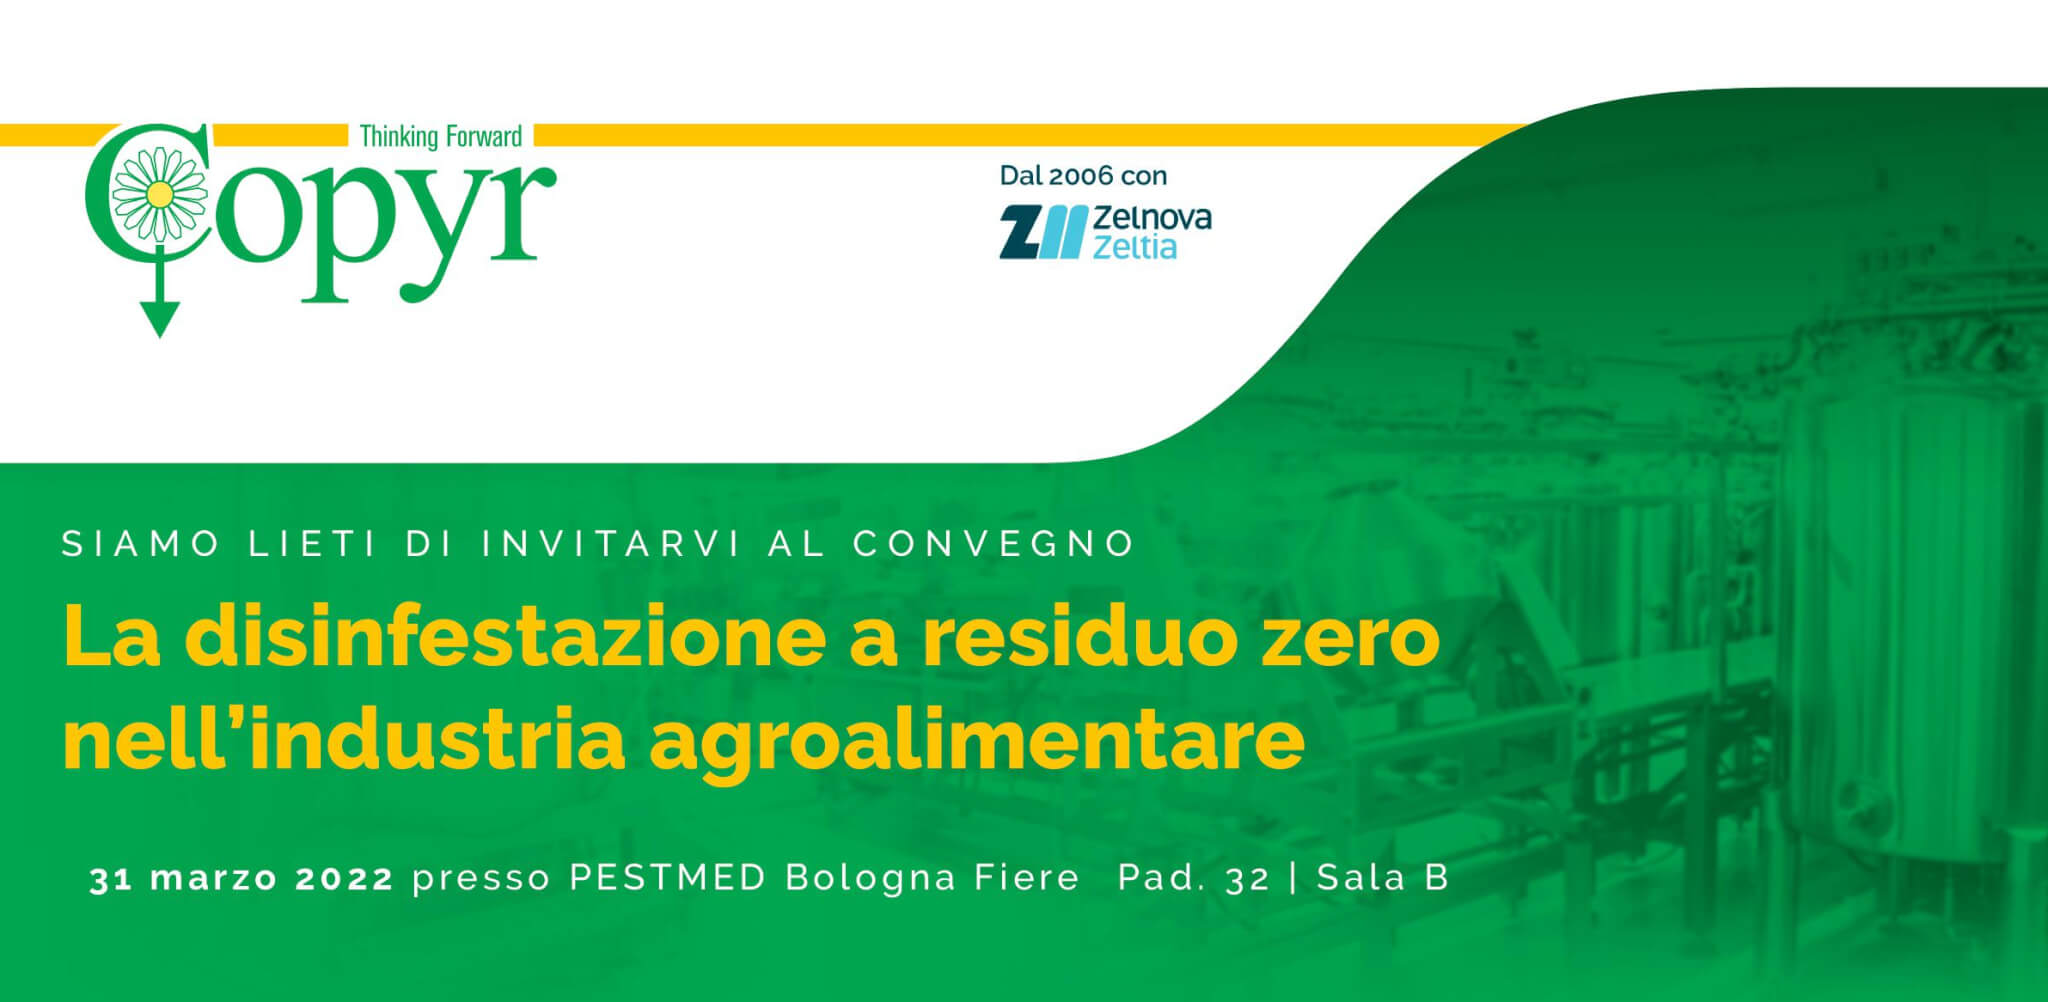 “La disinfestazione a residuo zero nell’industria agroalimentare” – CONVEGNO PESTMED 2022